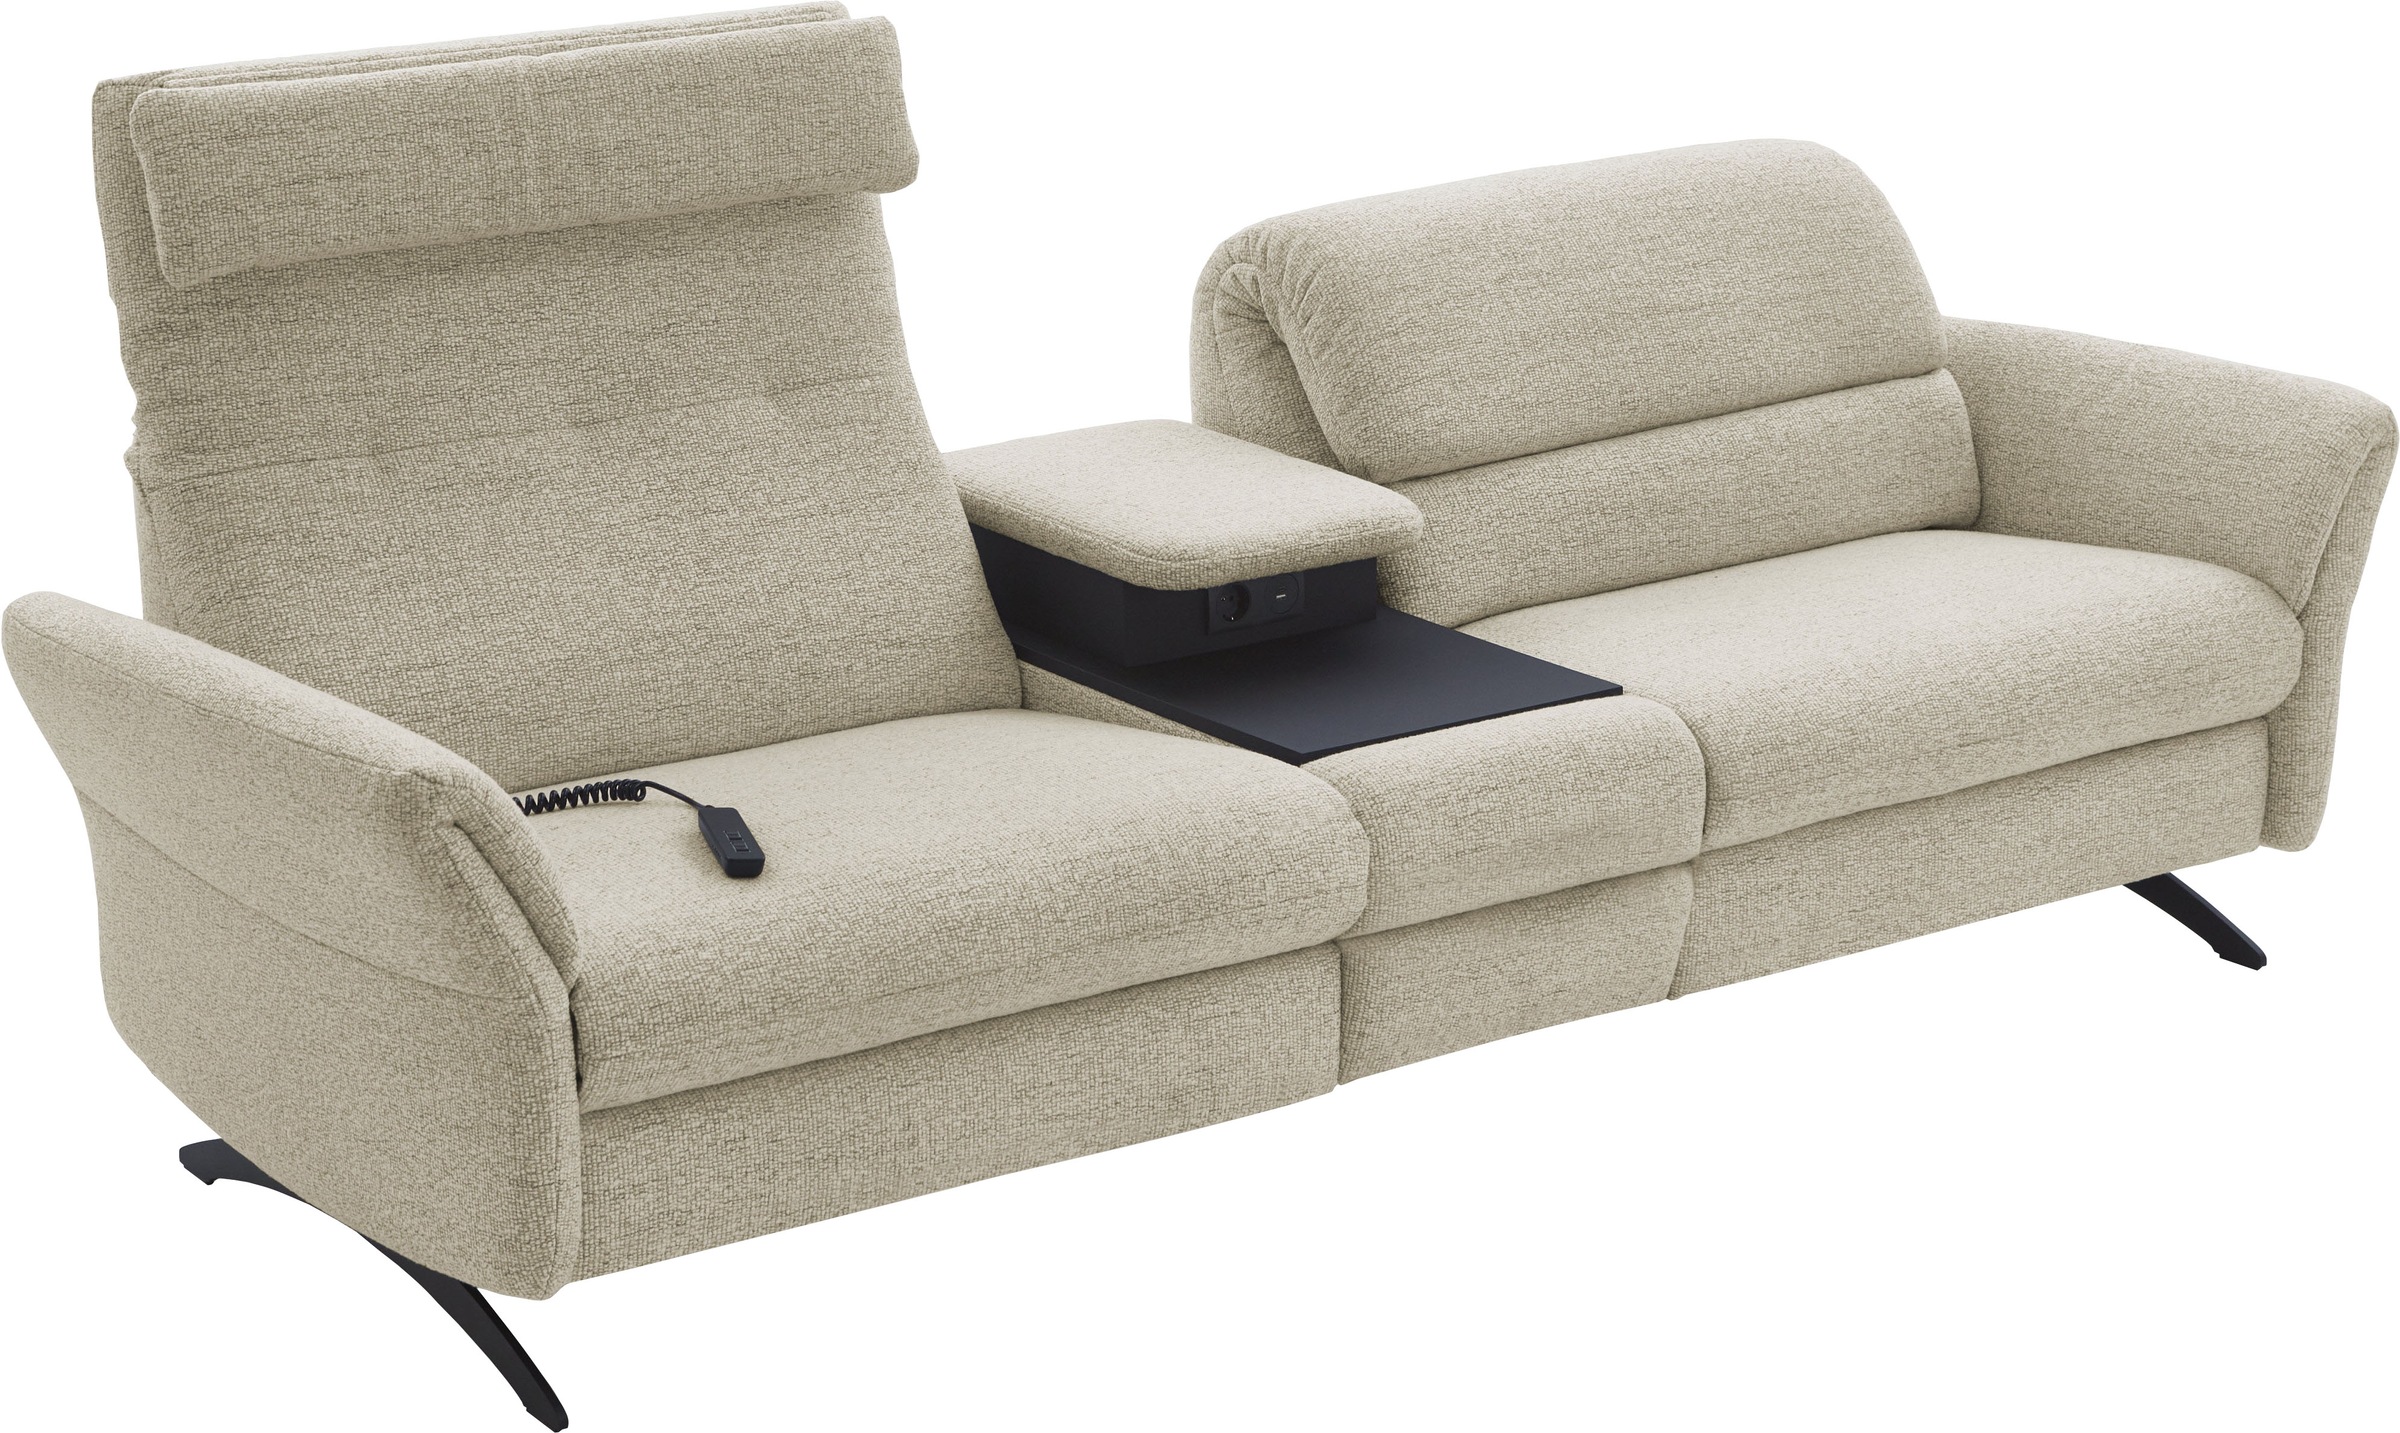 Places of Style 3-Sitzer »Bellaria, inklusive 2x Relaxfunktion motorisch mit Herz-Waage-Beschlag«, Zwischenelement mit Tisch, Steckdose & USB-Ladestation